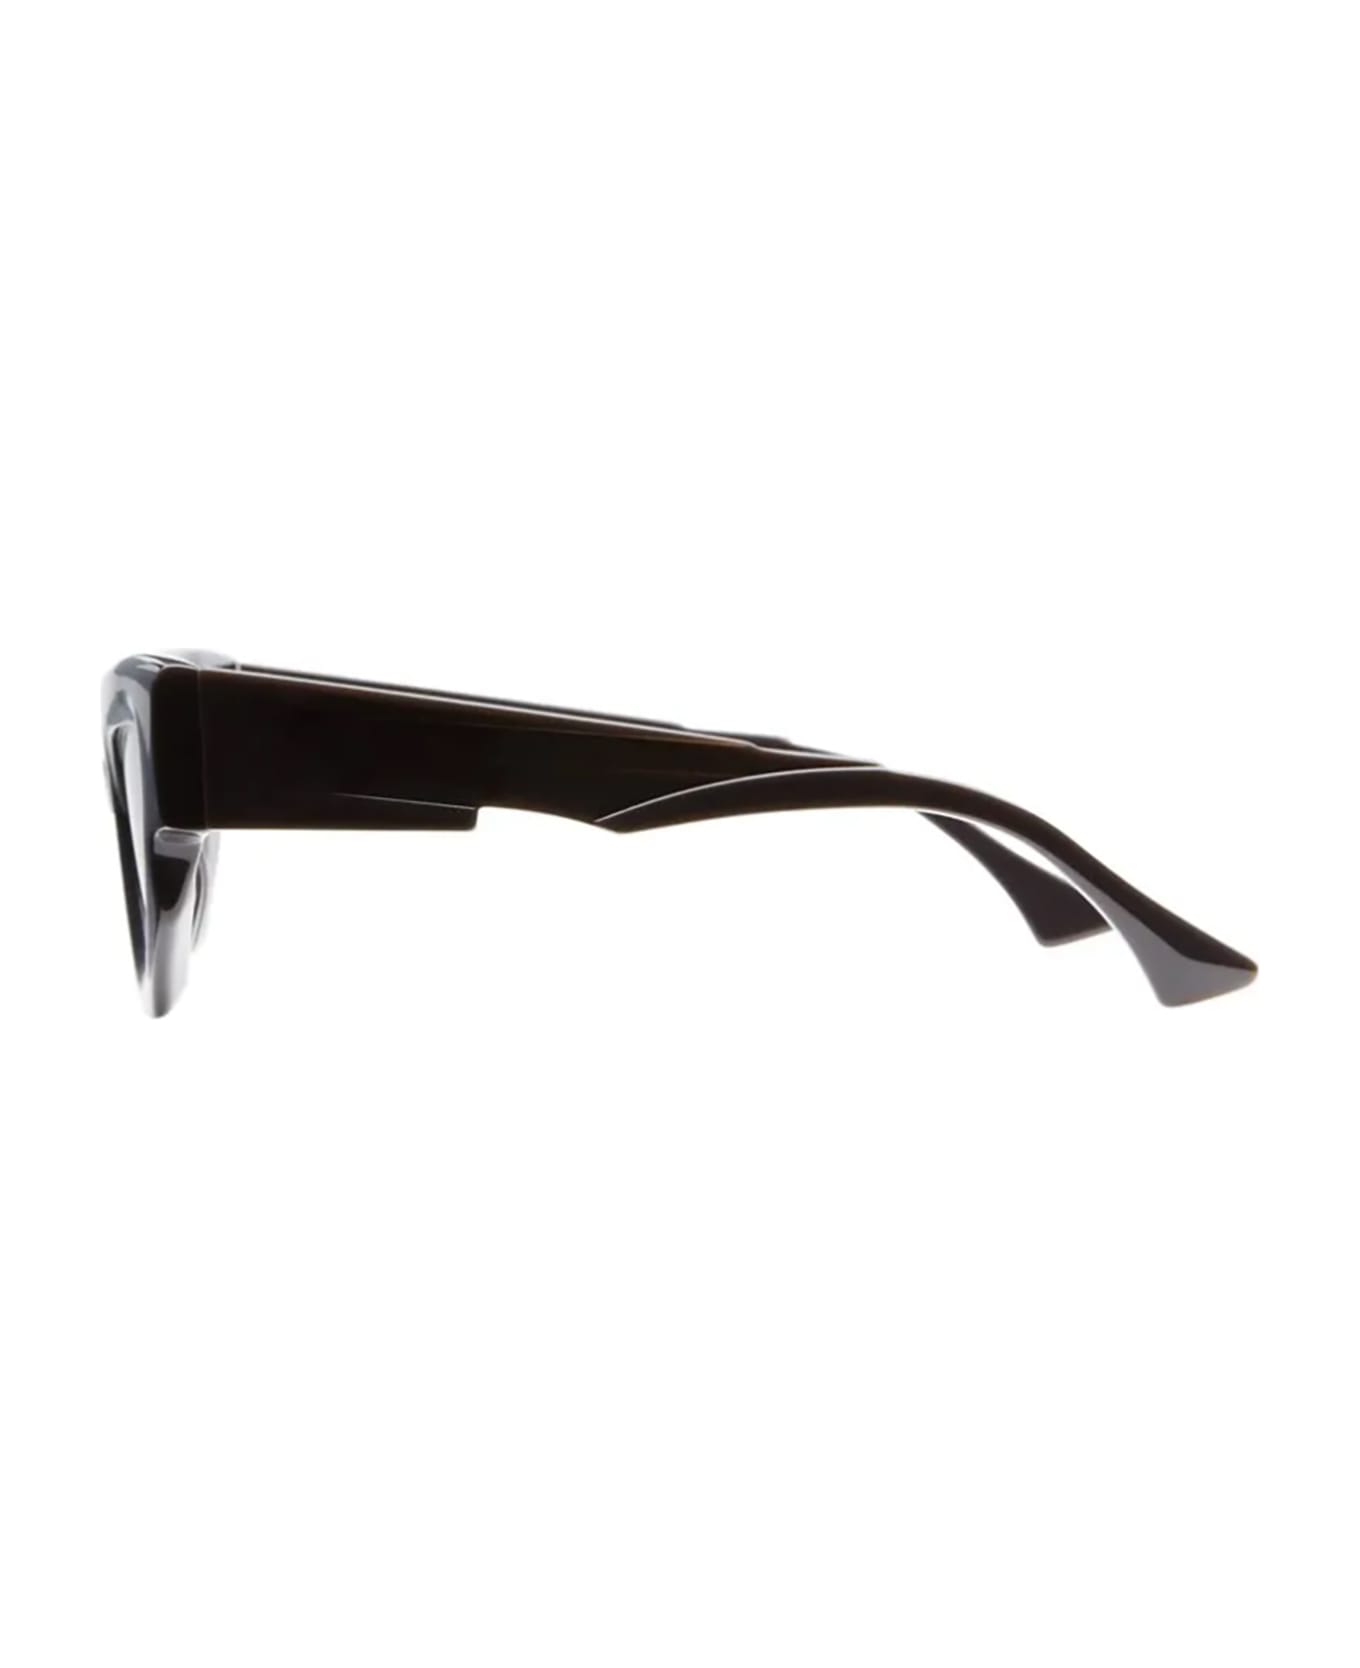 Kuboraum F5 Sunglasses - * サングラス